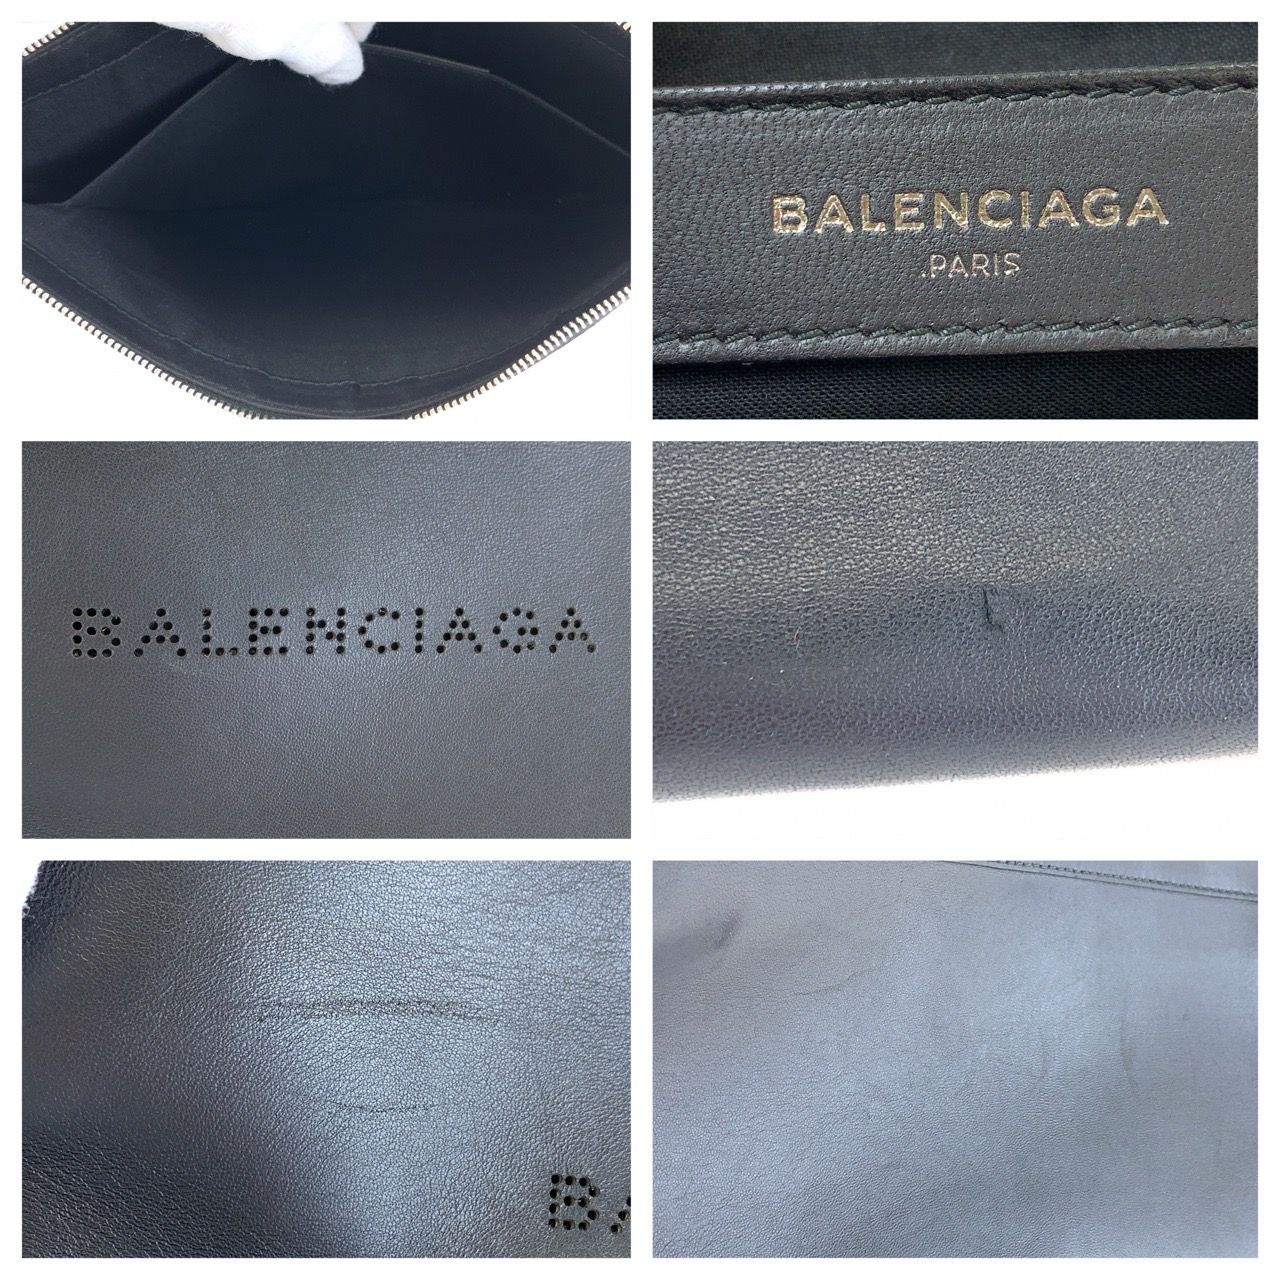 BALENCIAGA バレンシアガ ネイビークリップM ブラック レザー クラッチバッグ セカンドバッグ メンズ 400646